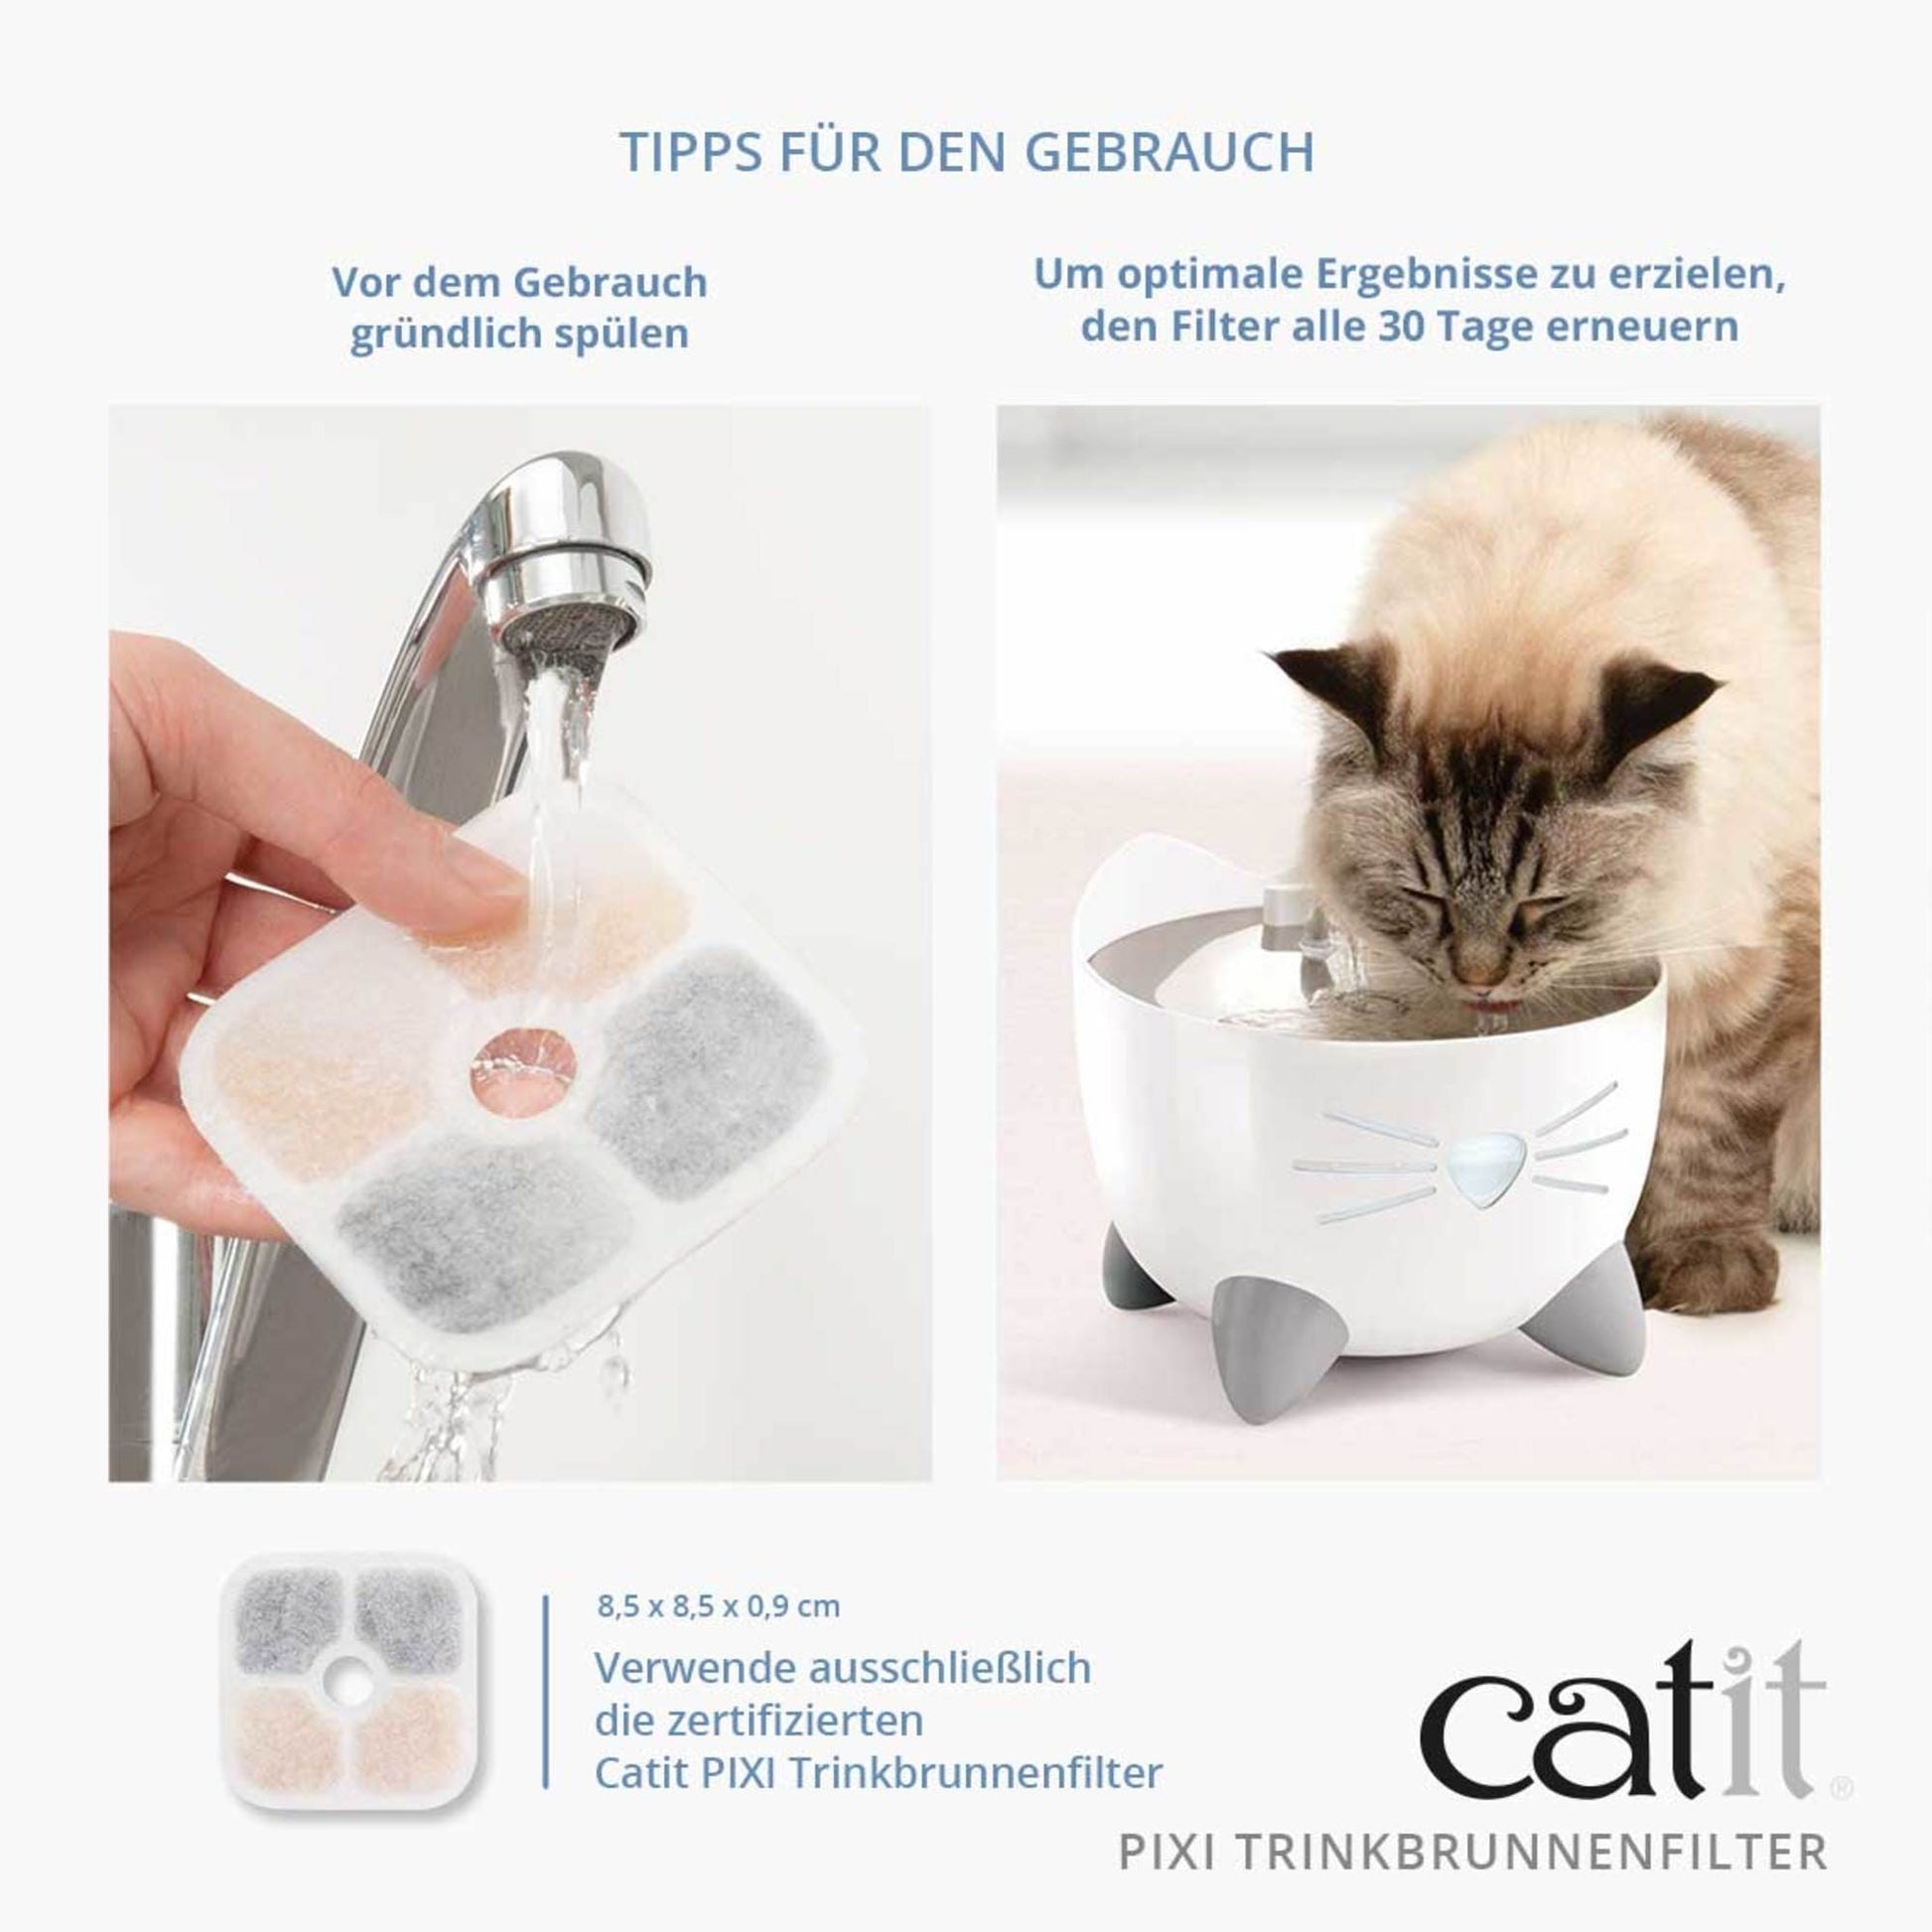 Catit PIXI Trinkbrunnenfilter – Gesundes Wasser für die Katze